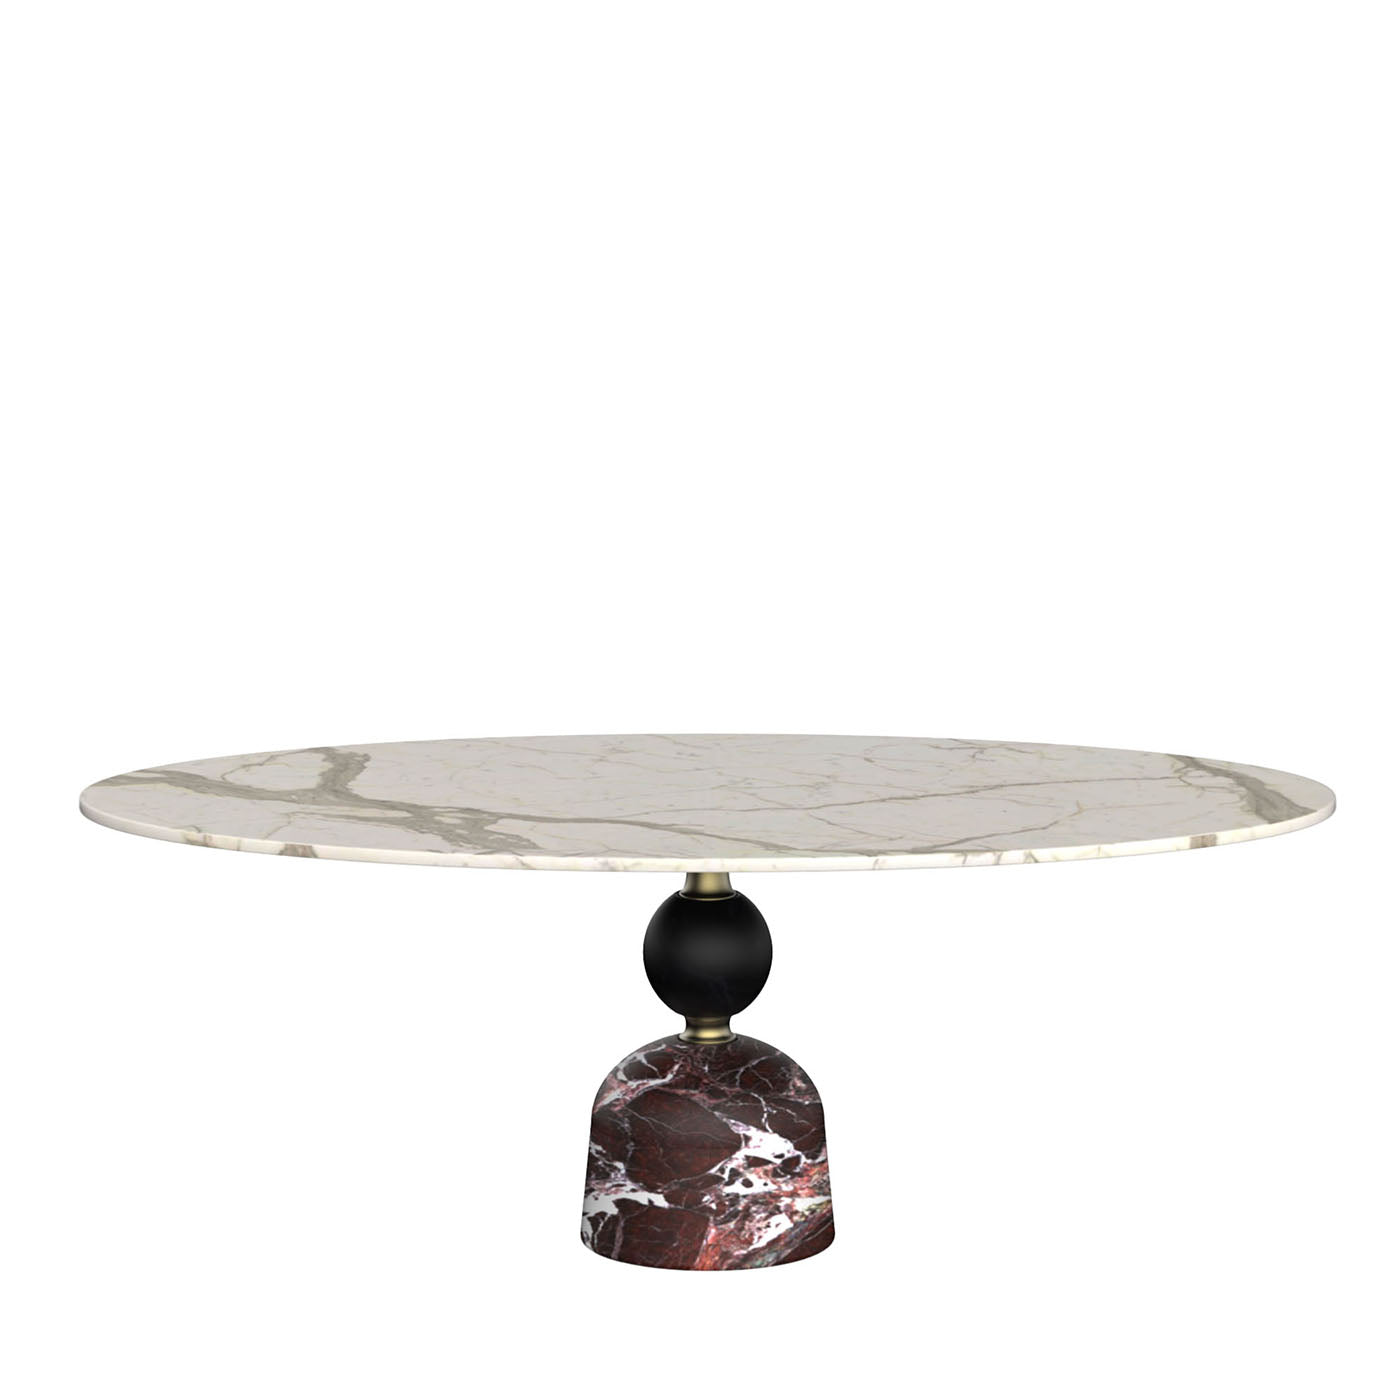 Artù Table de salle à manger ronde en marbre polychrome par Paolo Rizzatto #2 - Vue principale